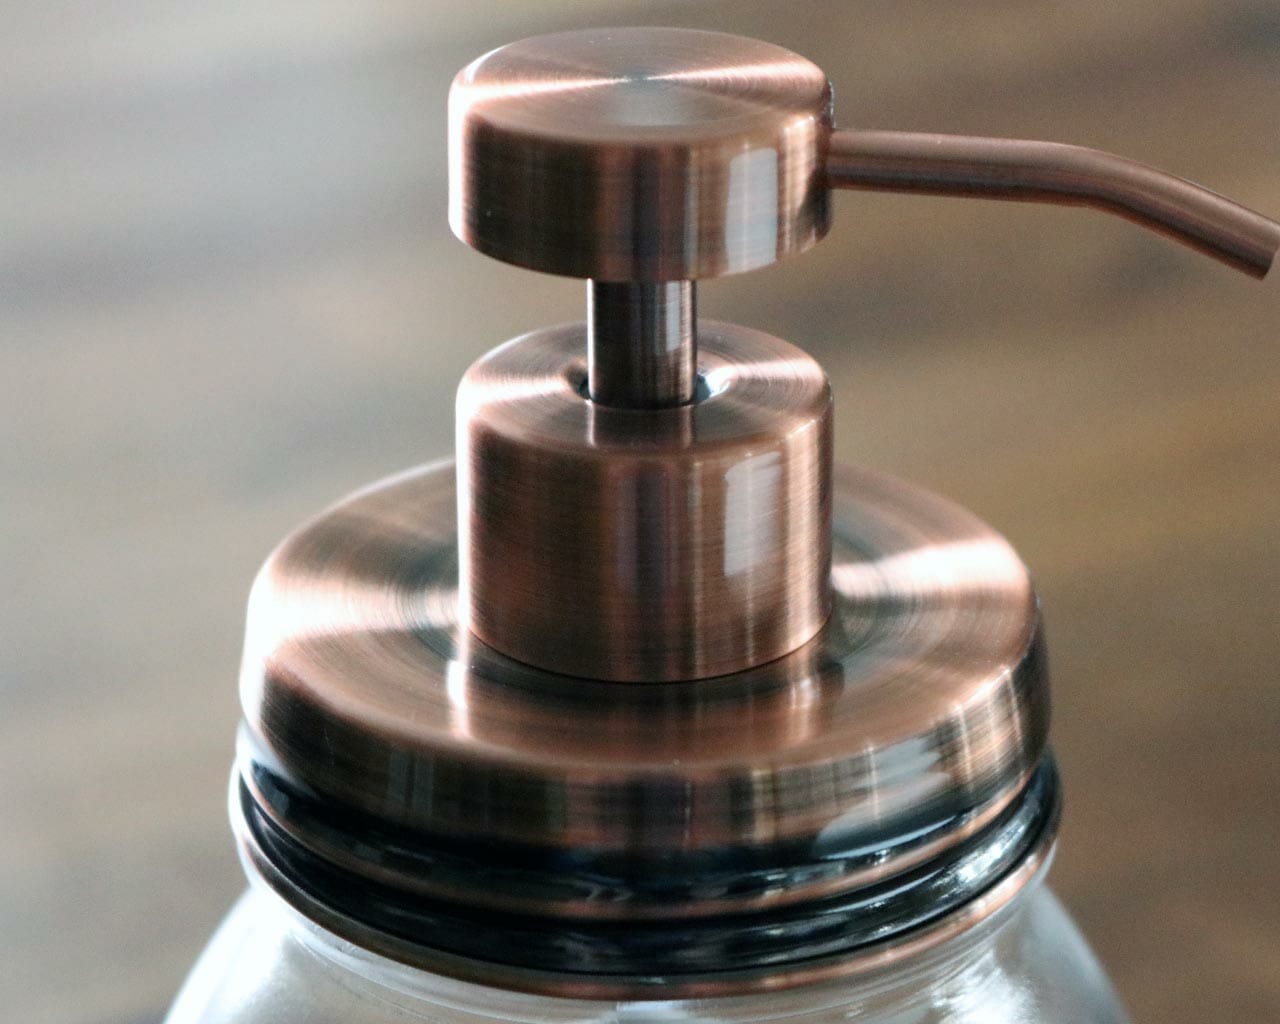 Vintage copper soap pump dispenser lid kit for regular mouth Mason jars